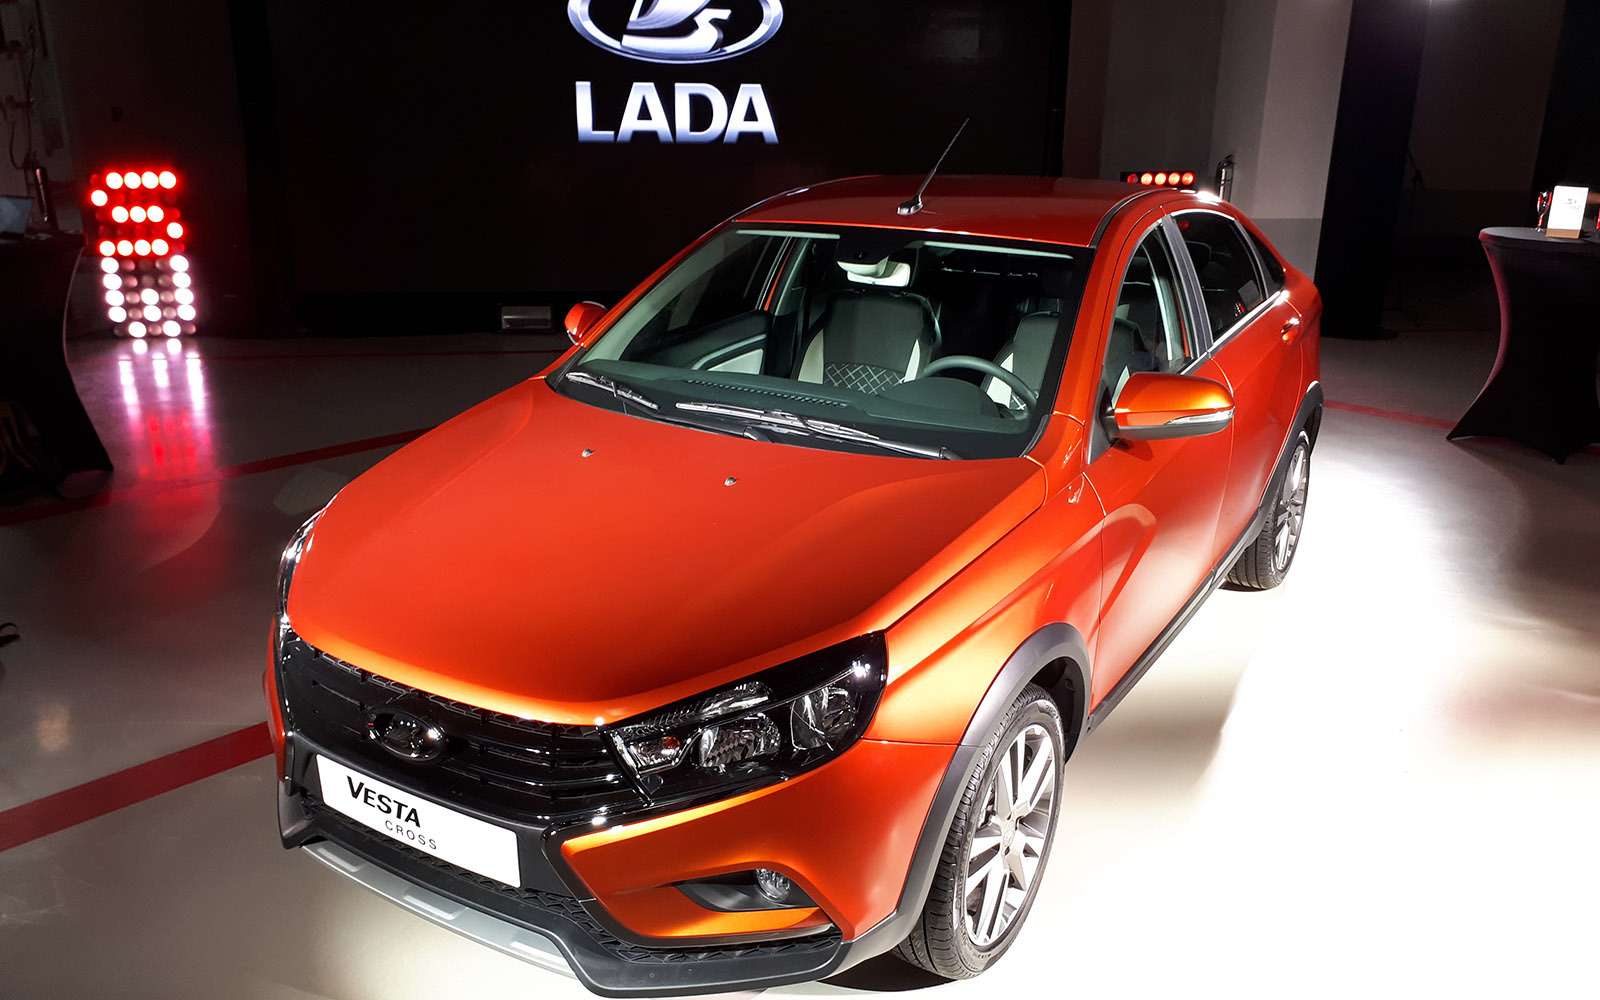 Седан Lada Vesta Cross: производство началось. Когда его ждать в продаже? — фото 863336